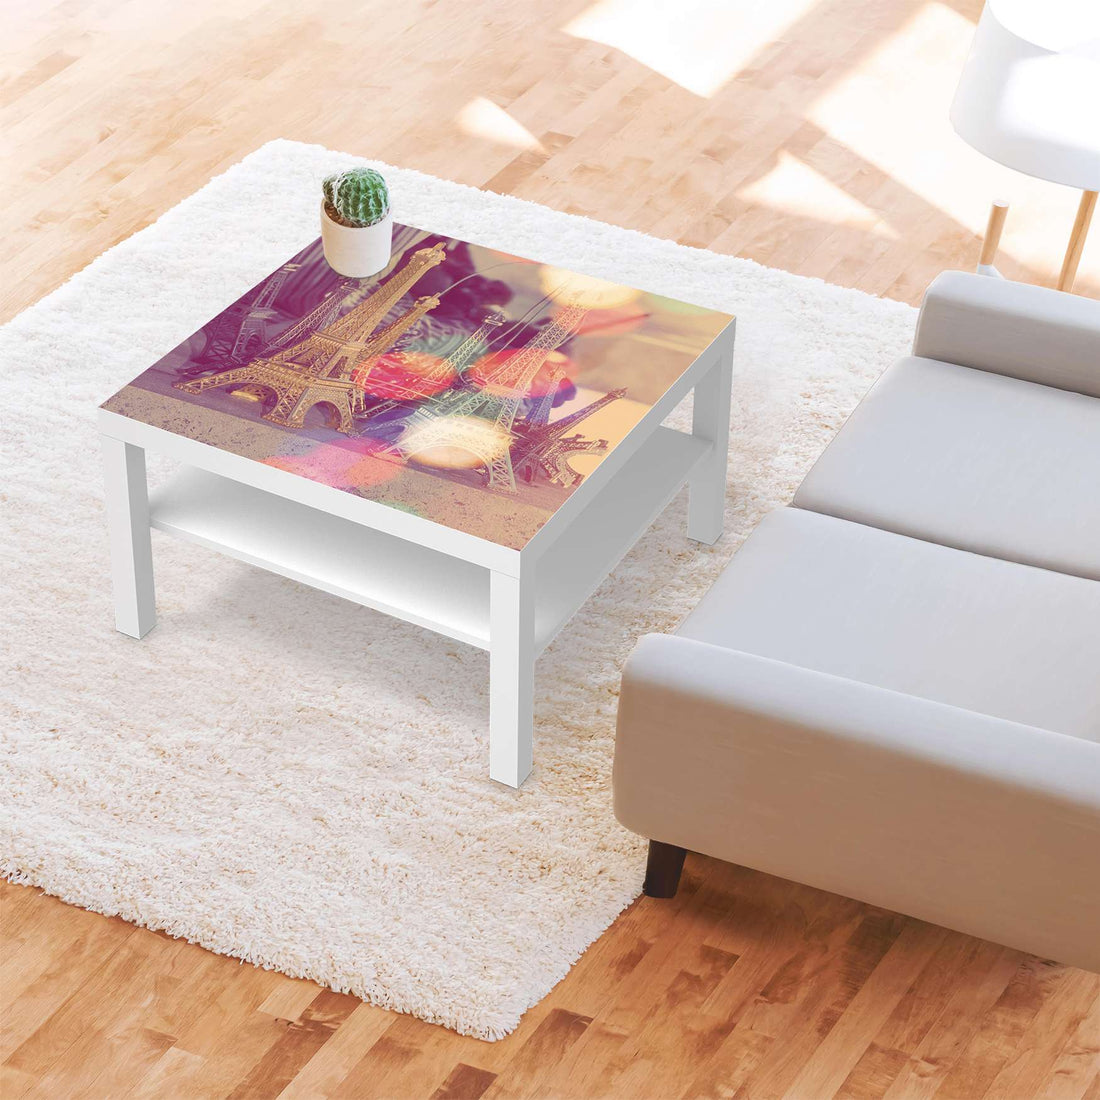 Selbstklebende Folie Paris - IKEA Lack Tisch 78x78 cm - Wohnzimmer